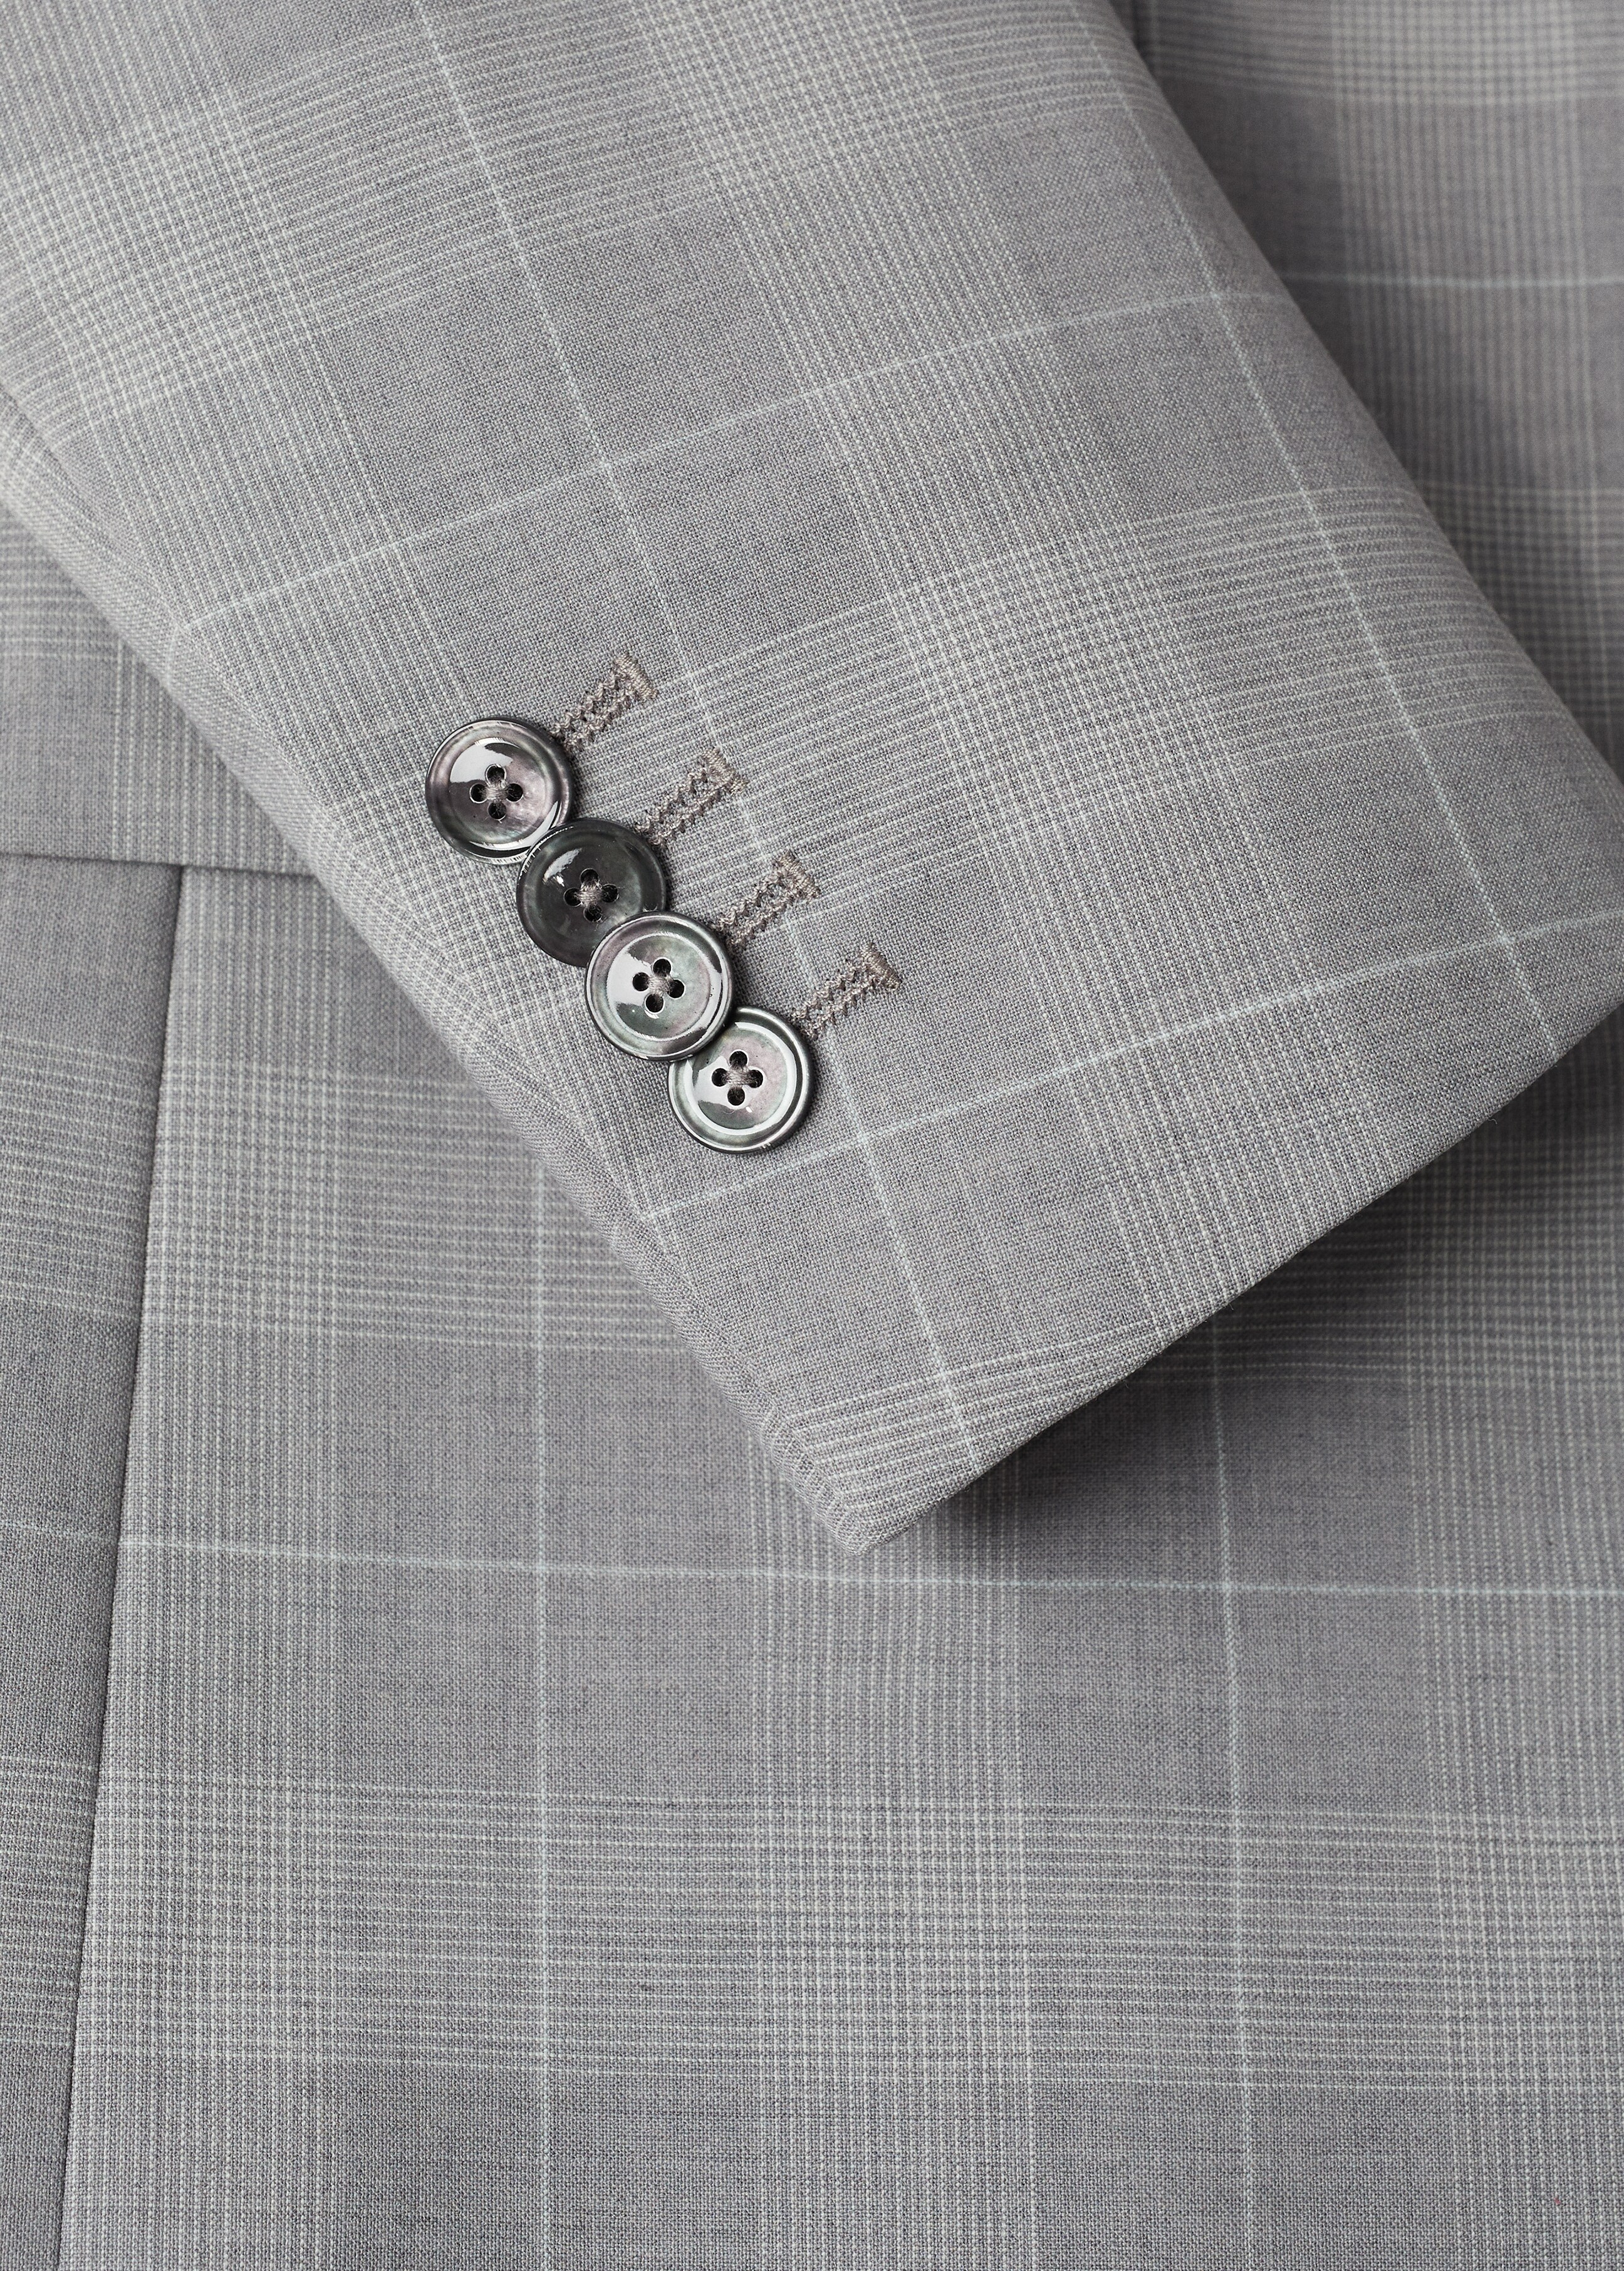 Lněné oblekové sako slim fit s kostkou - Detail zboží 8